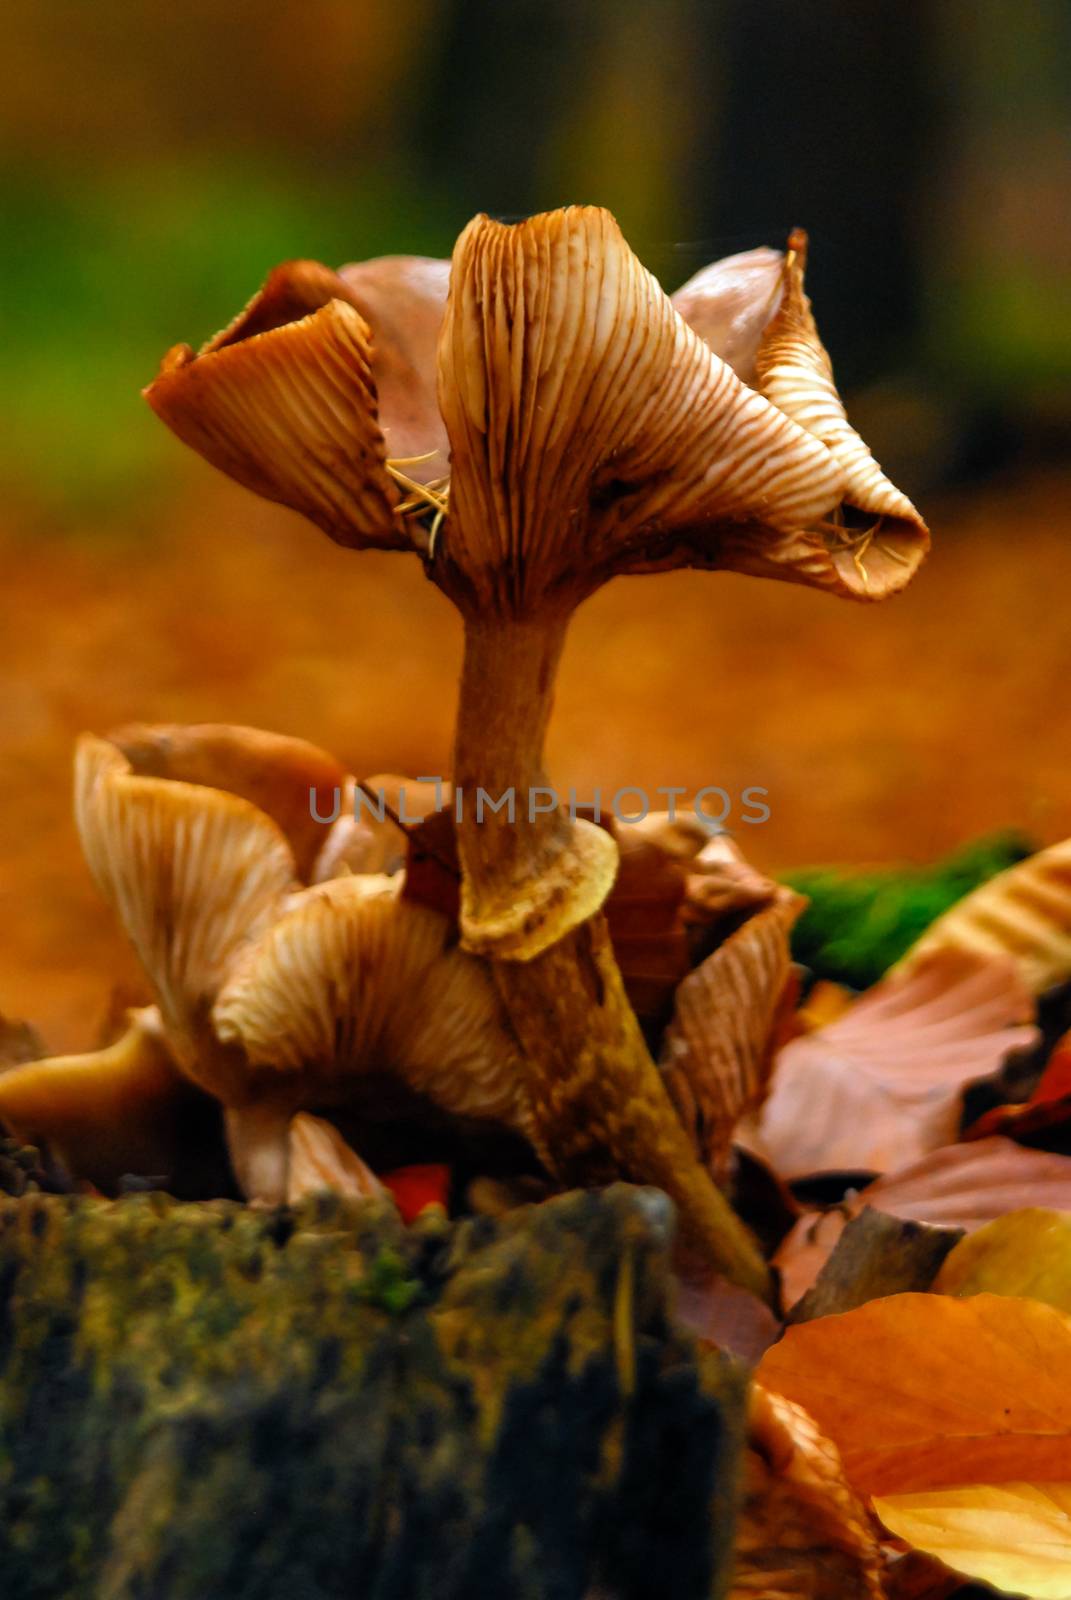 Fungus mushroom orange brown growing on rotten wood stomp by MXW_Stock